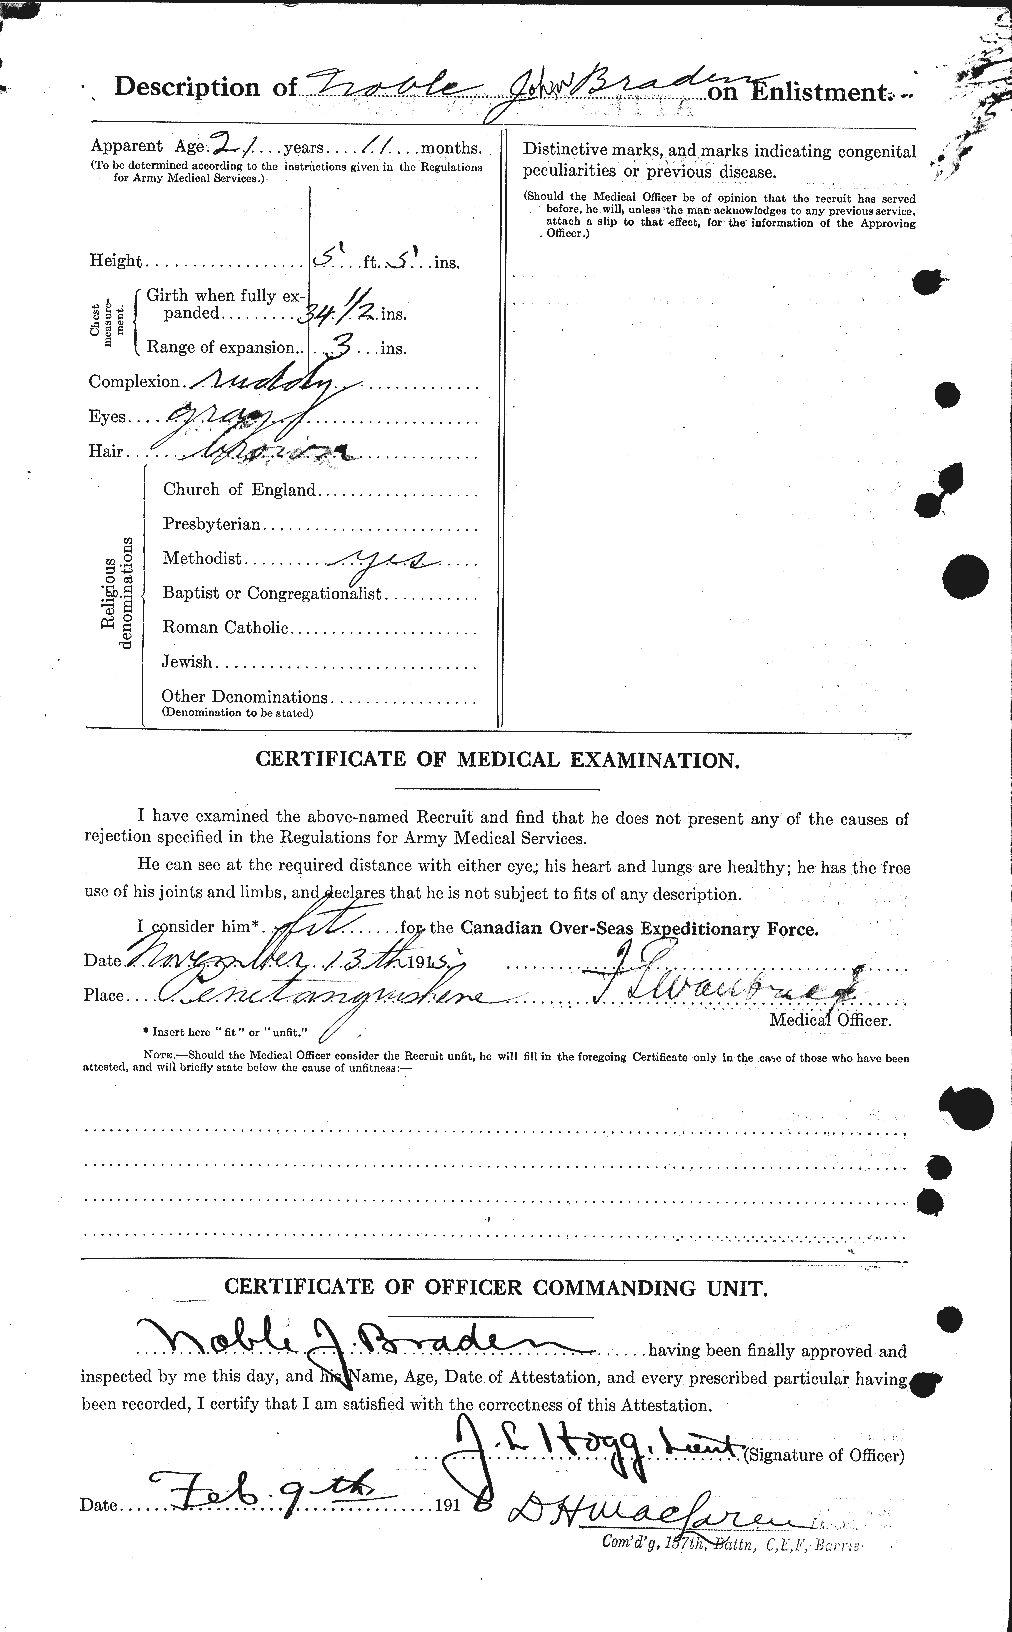 Dossiers du Personnel de la Première Guerre mondiale - CEC 256868b